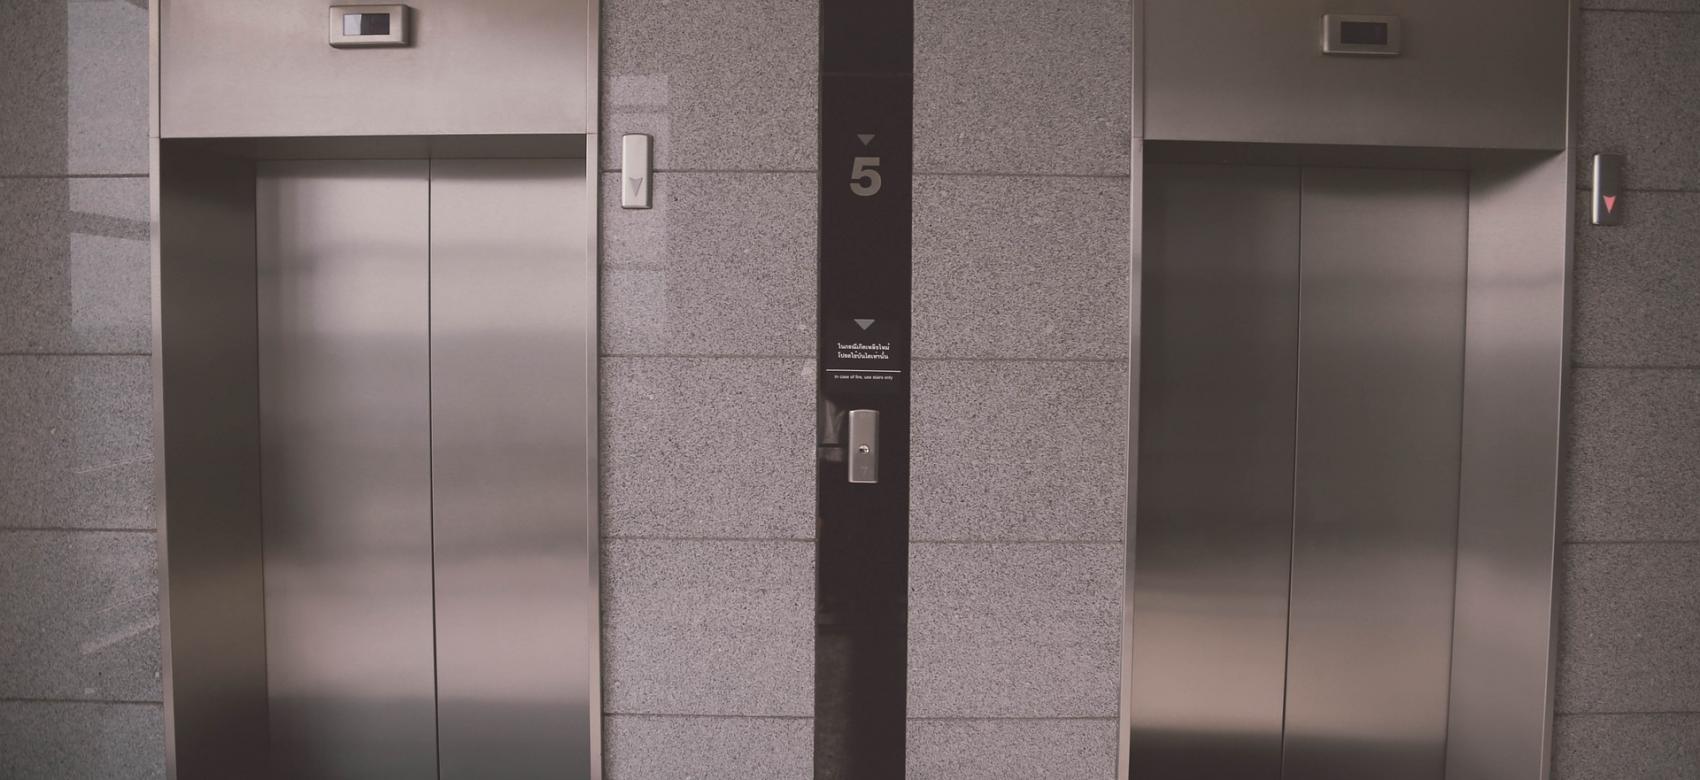 Frente de ascensores